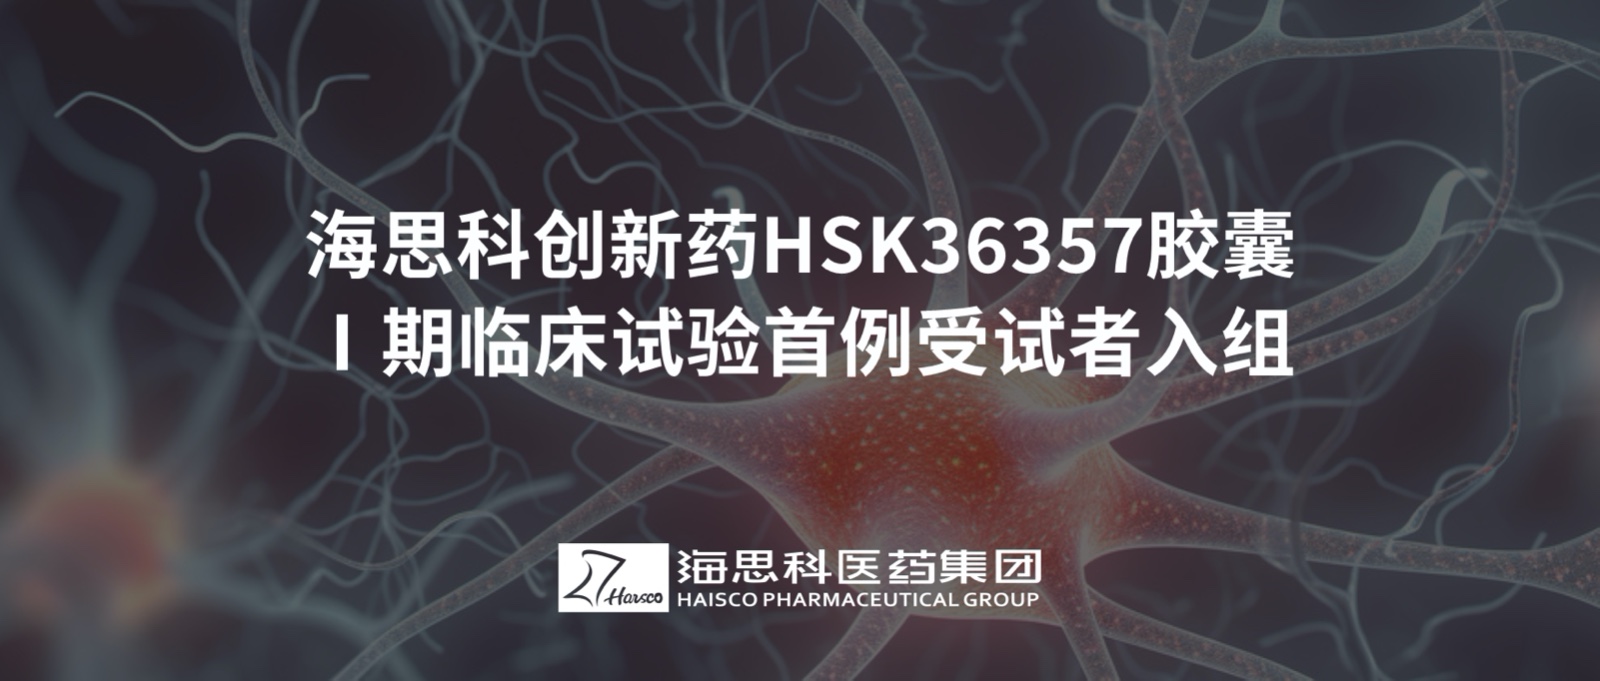 云顶国际官网创新药HSK36357胶囊Ⅰ期临床试验首例受试者入组